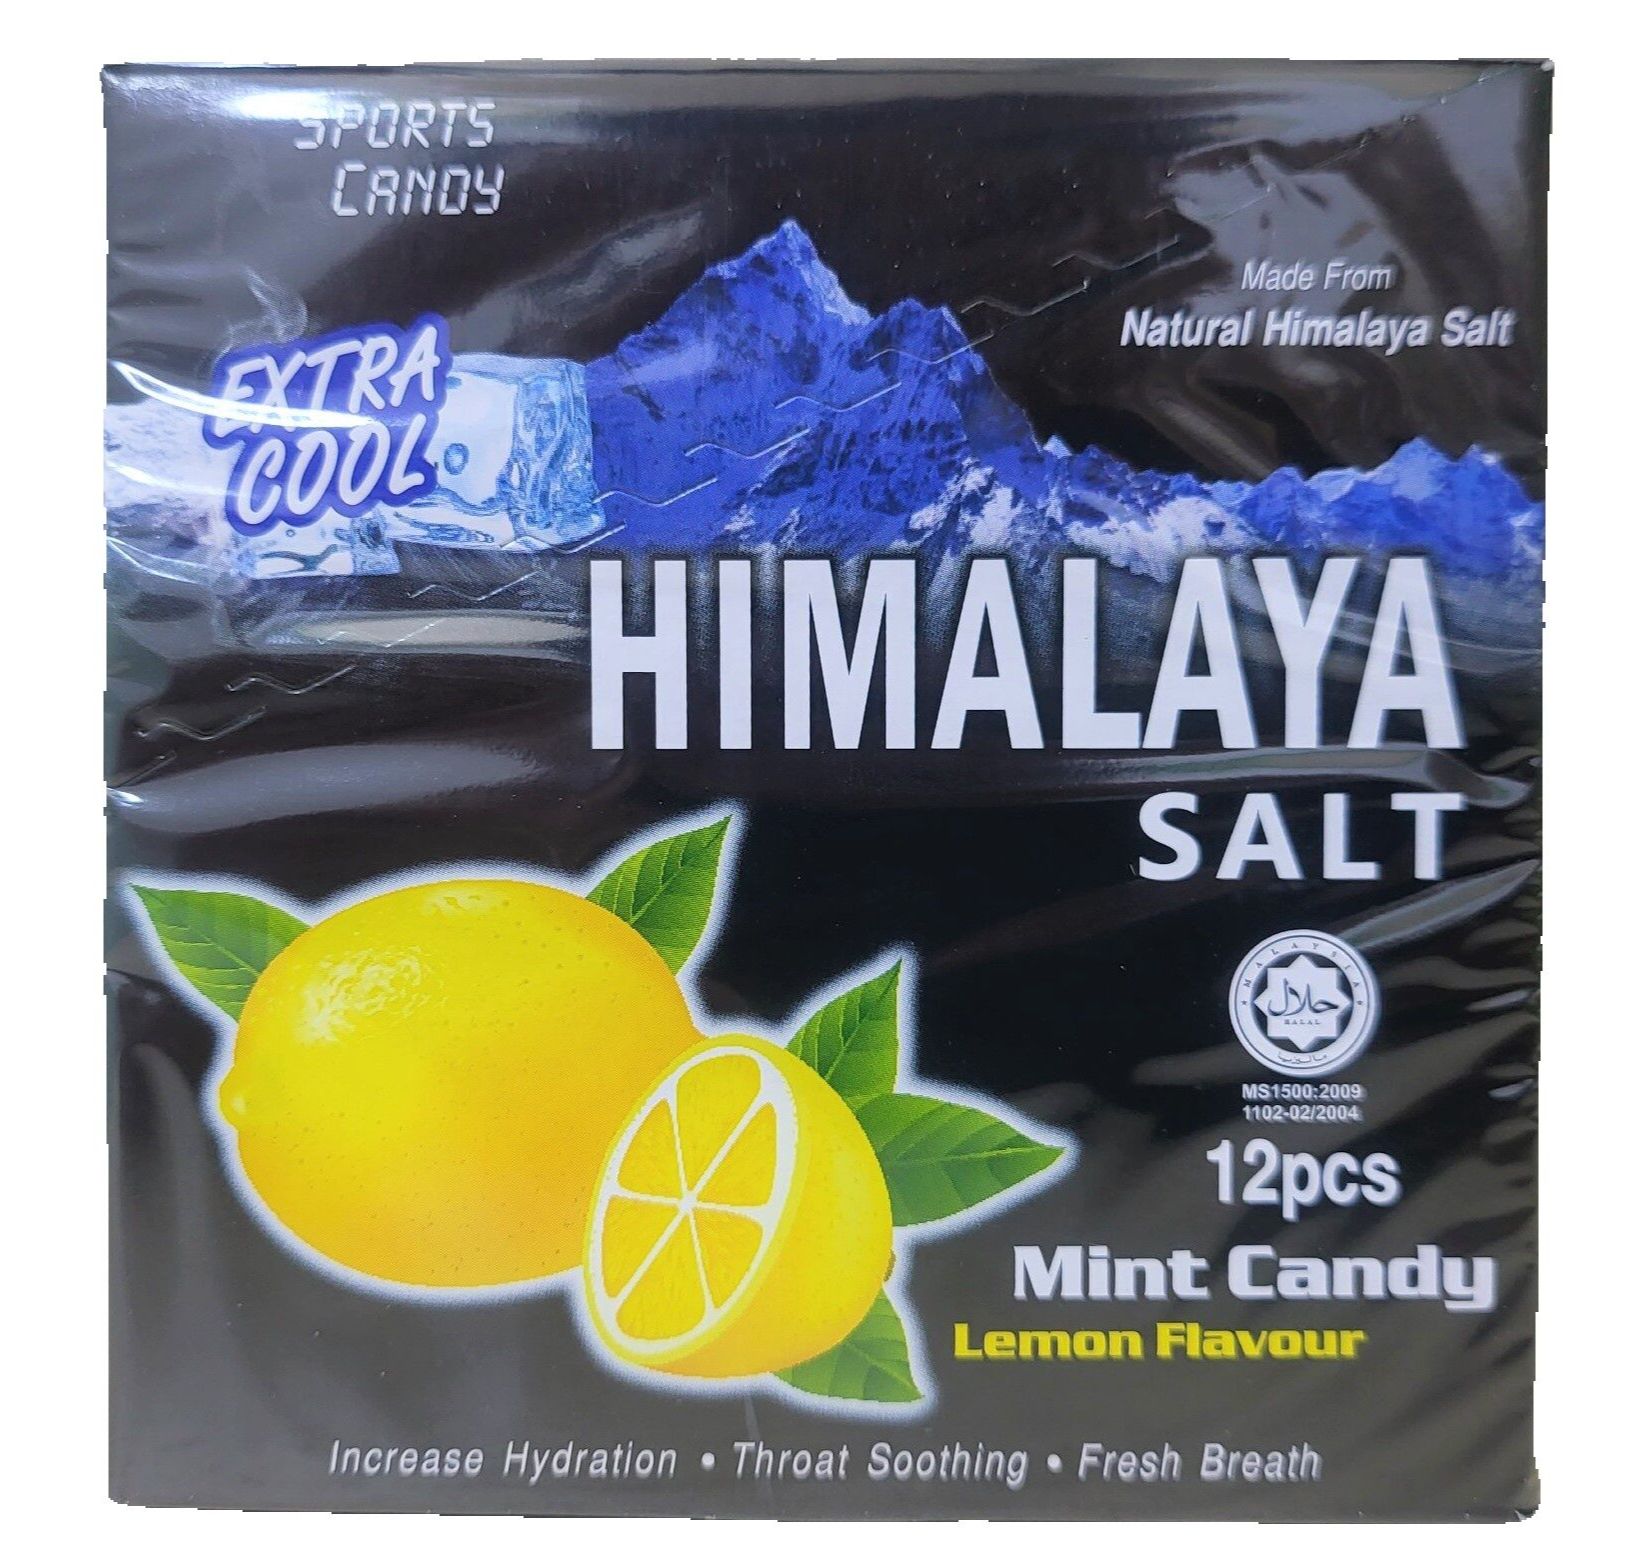 BIGFOOT (hộp 12 gói x 15g) KẸO BẠC HÀ CHANH MUỐI HIMALAYA SALT Mint Candy Lemon Flavour (HALAL)